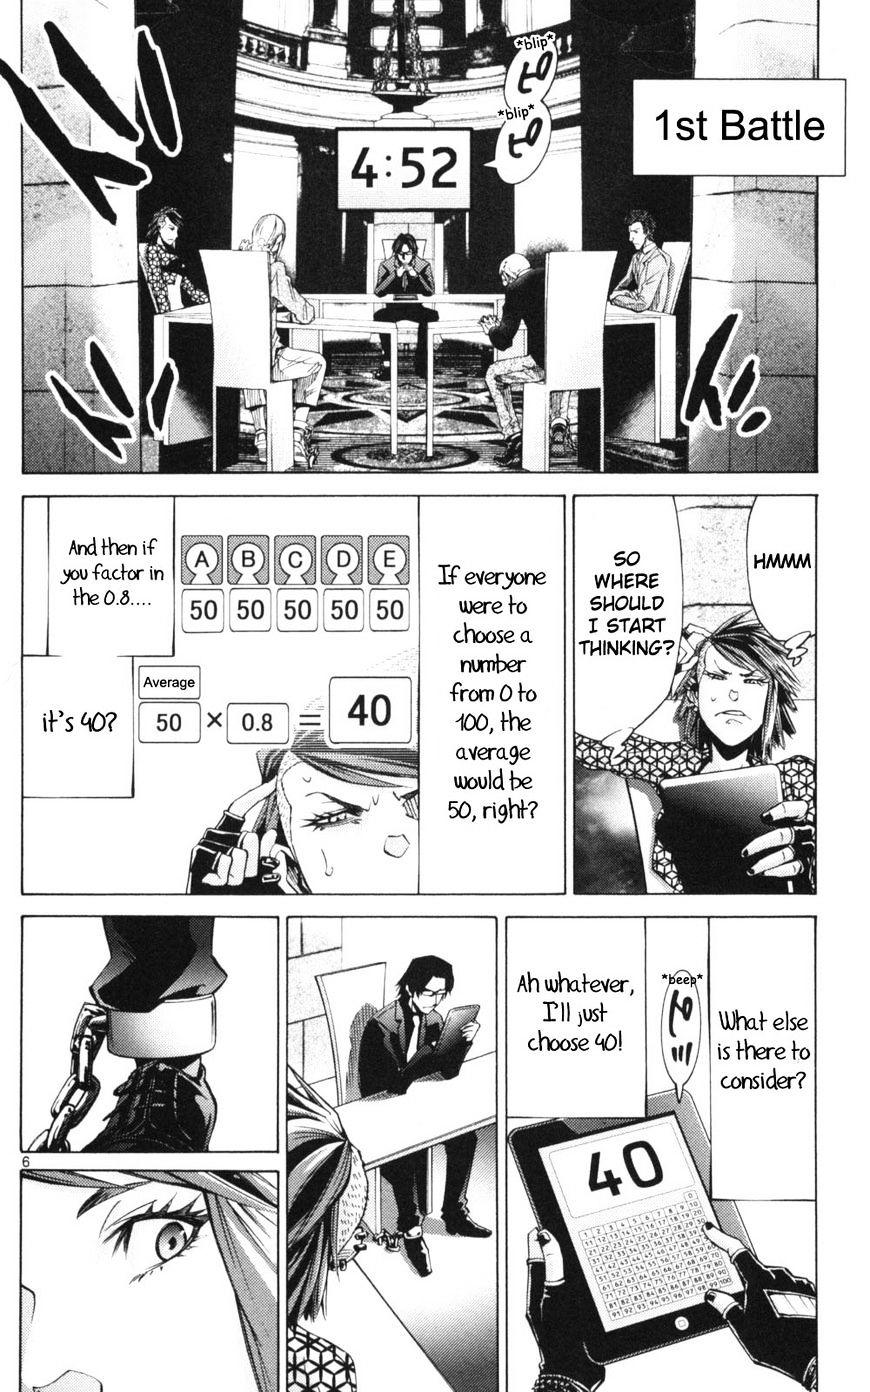 Imawa No Kuni No Alice Chapter 51.2 : Side Story 6 - King Of Diamonds (2) page 6 - Mangakakalot